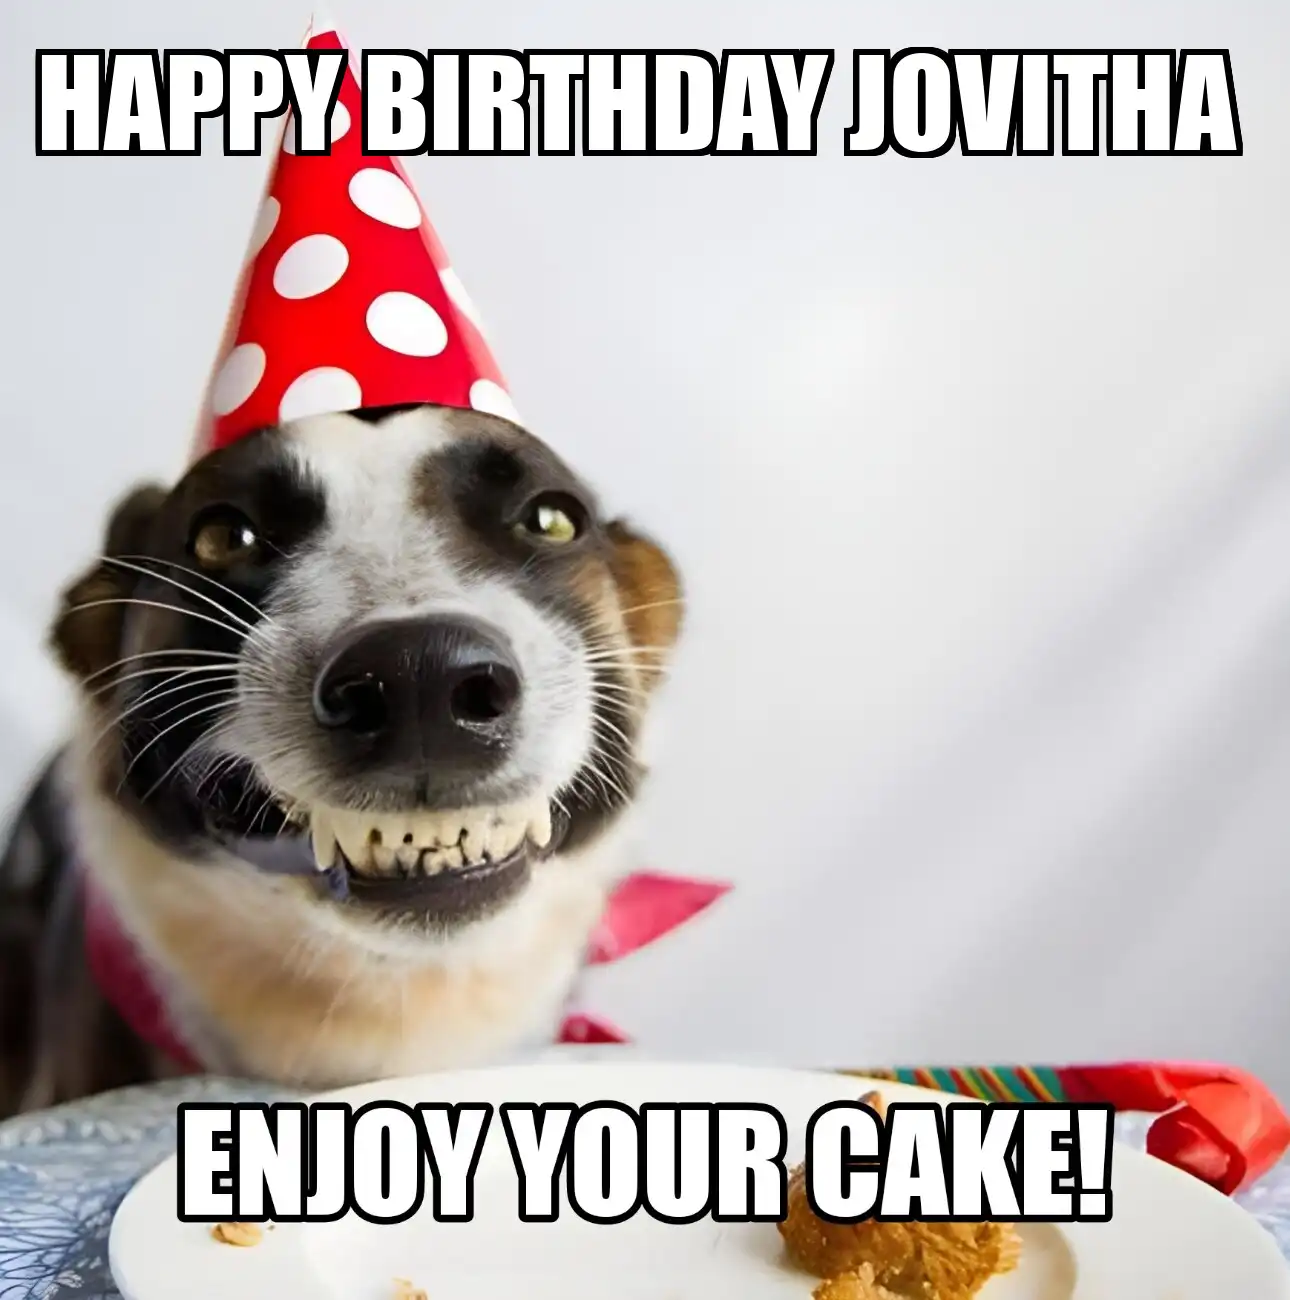 Happy Birthday Jovitha Enjoy Your Cake Dog Meme